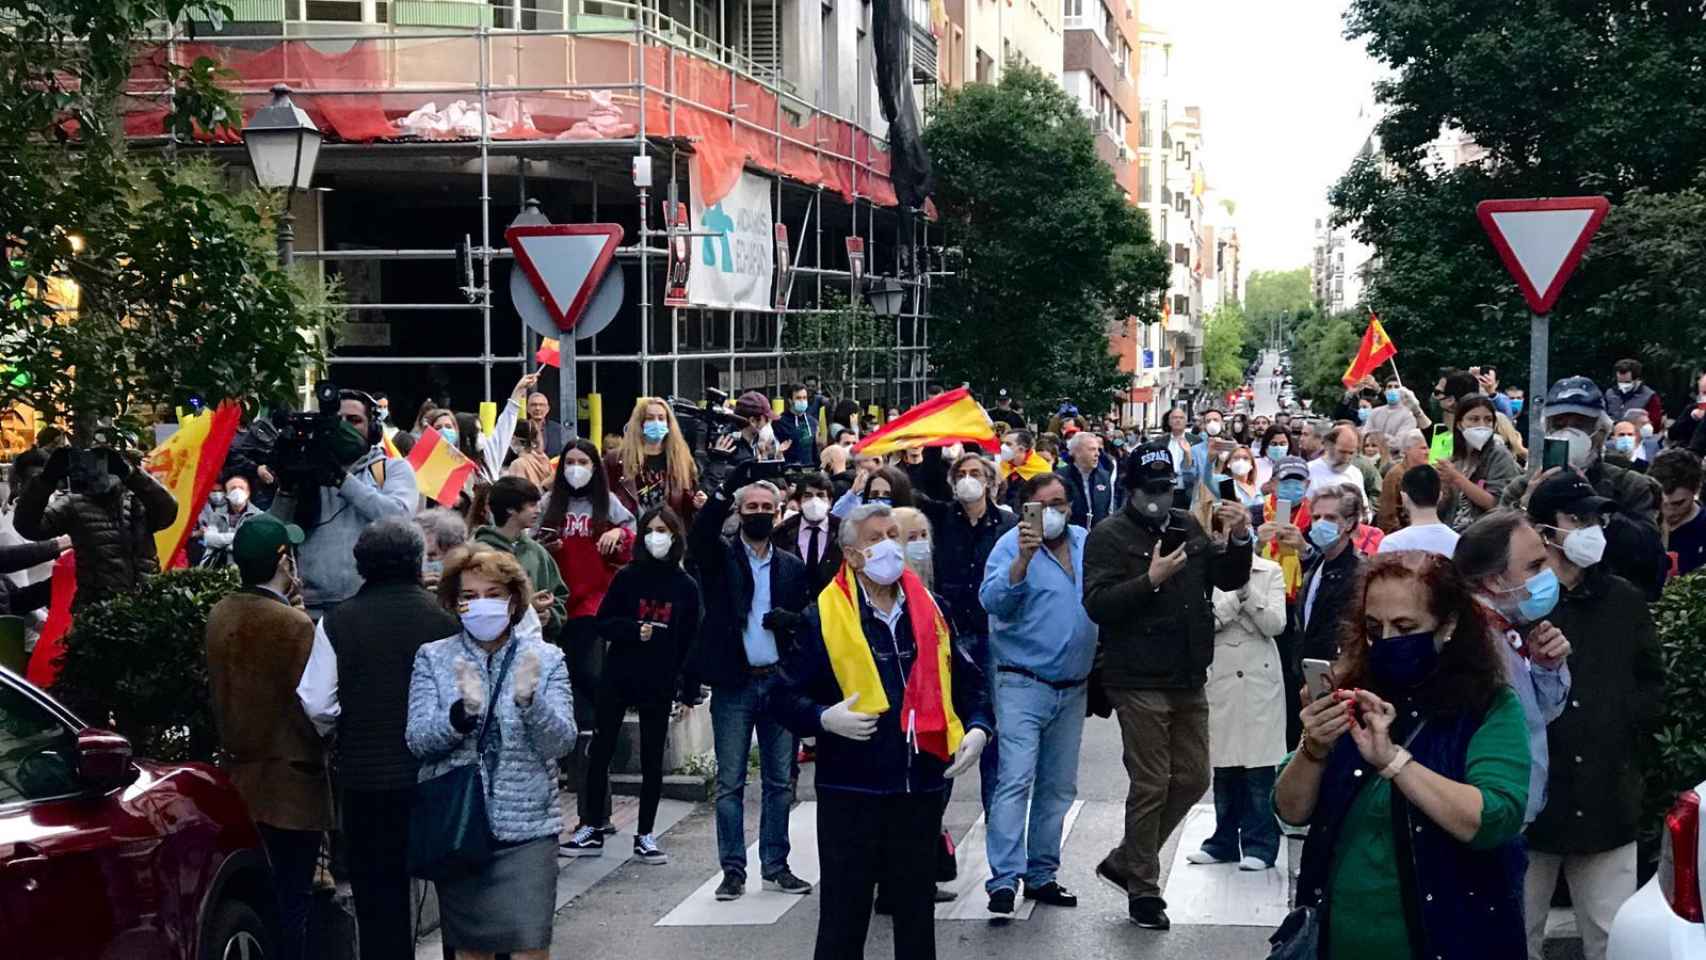 Nueva cacerolada contra Pedro Sánchez en el barrio de Salamanca de Madrid.